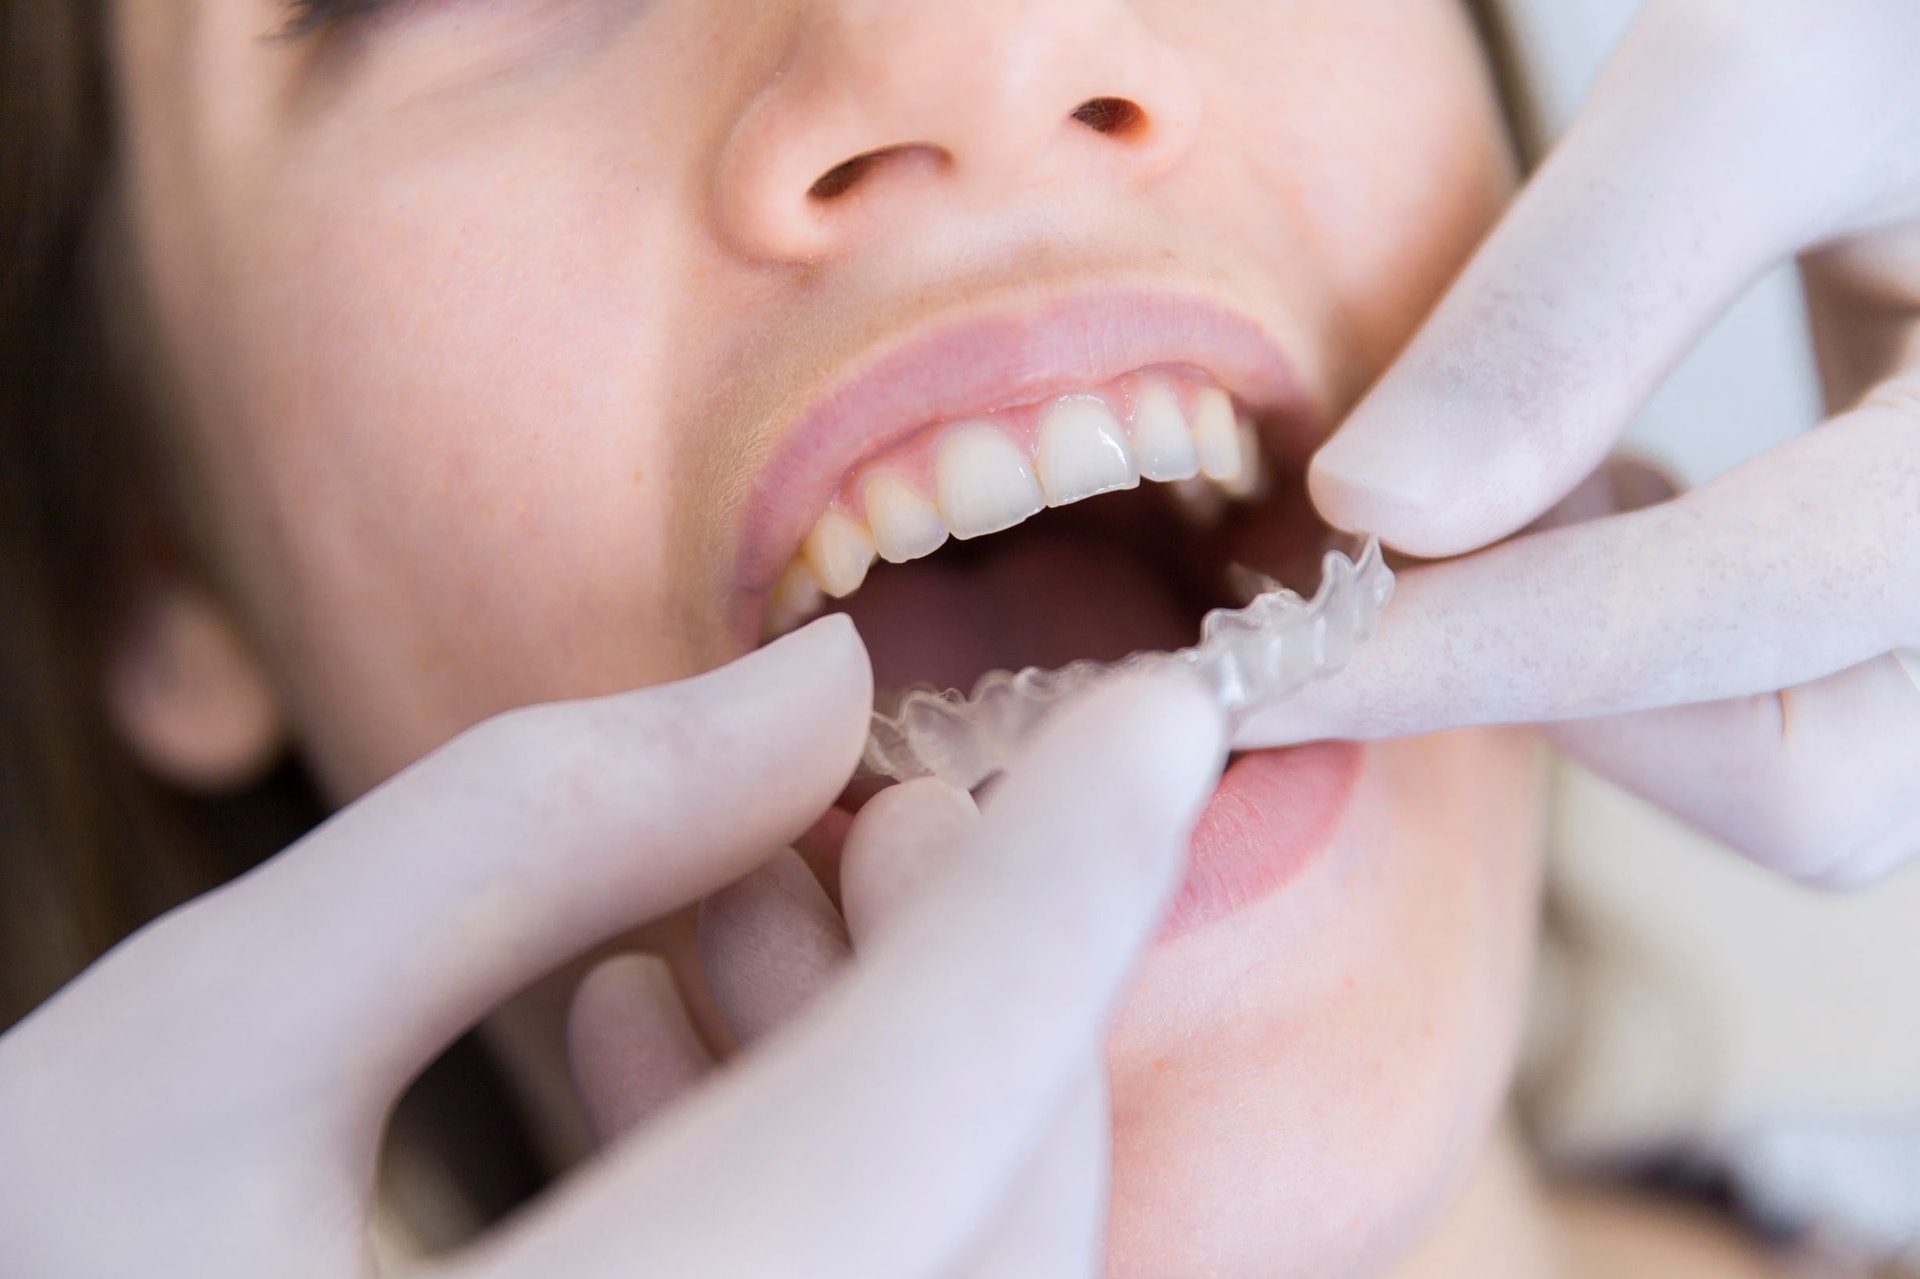 箍牙前必須接受牙醫的專業健康評估及分析。(圖片: Freepik)